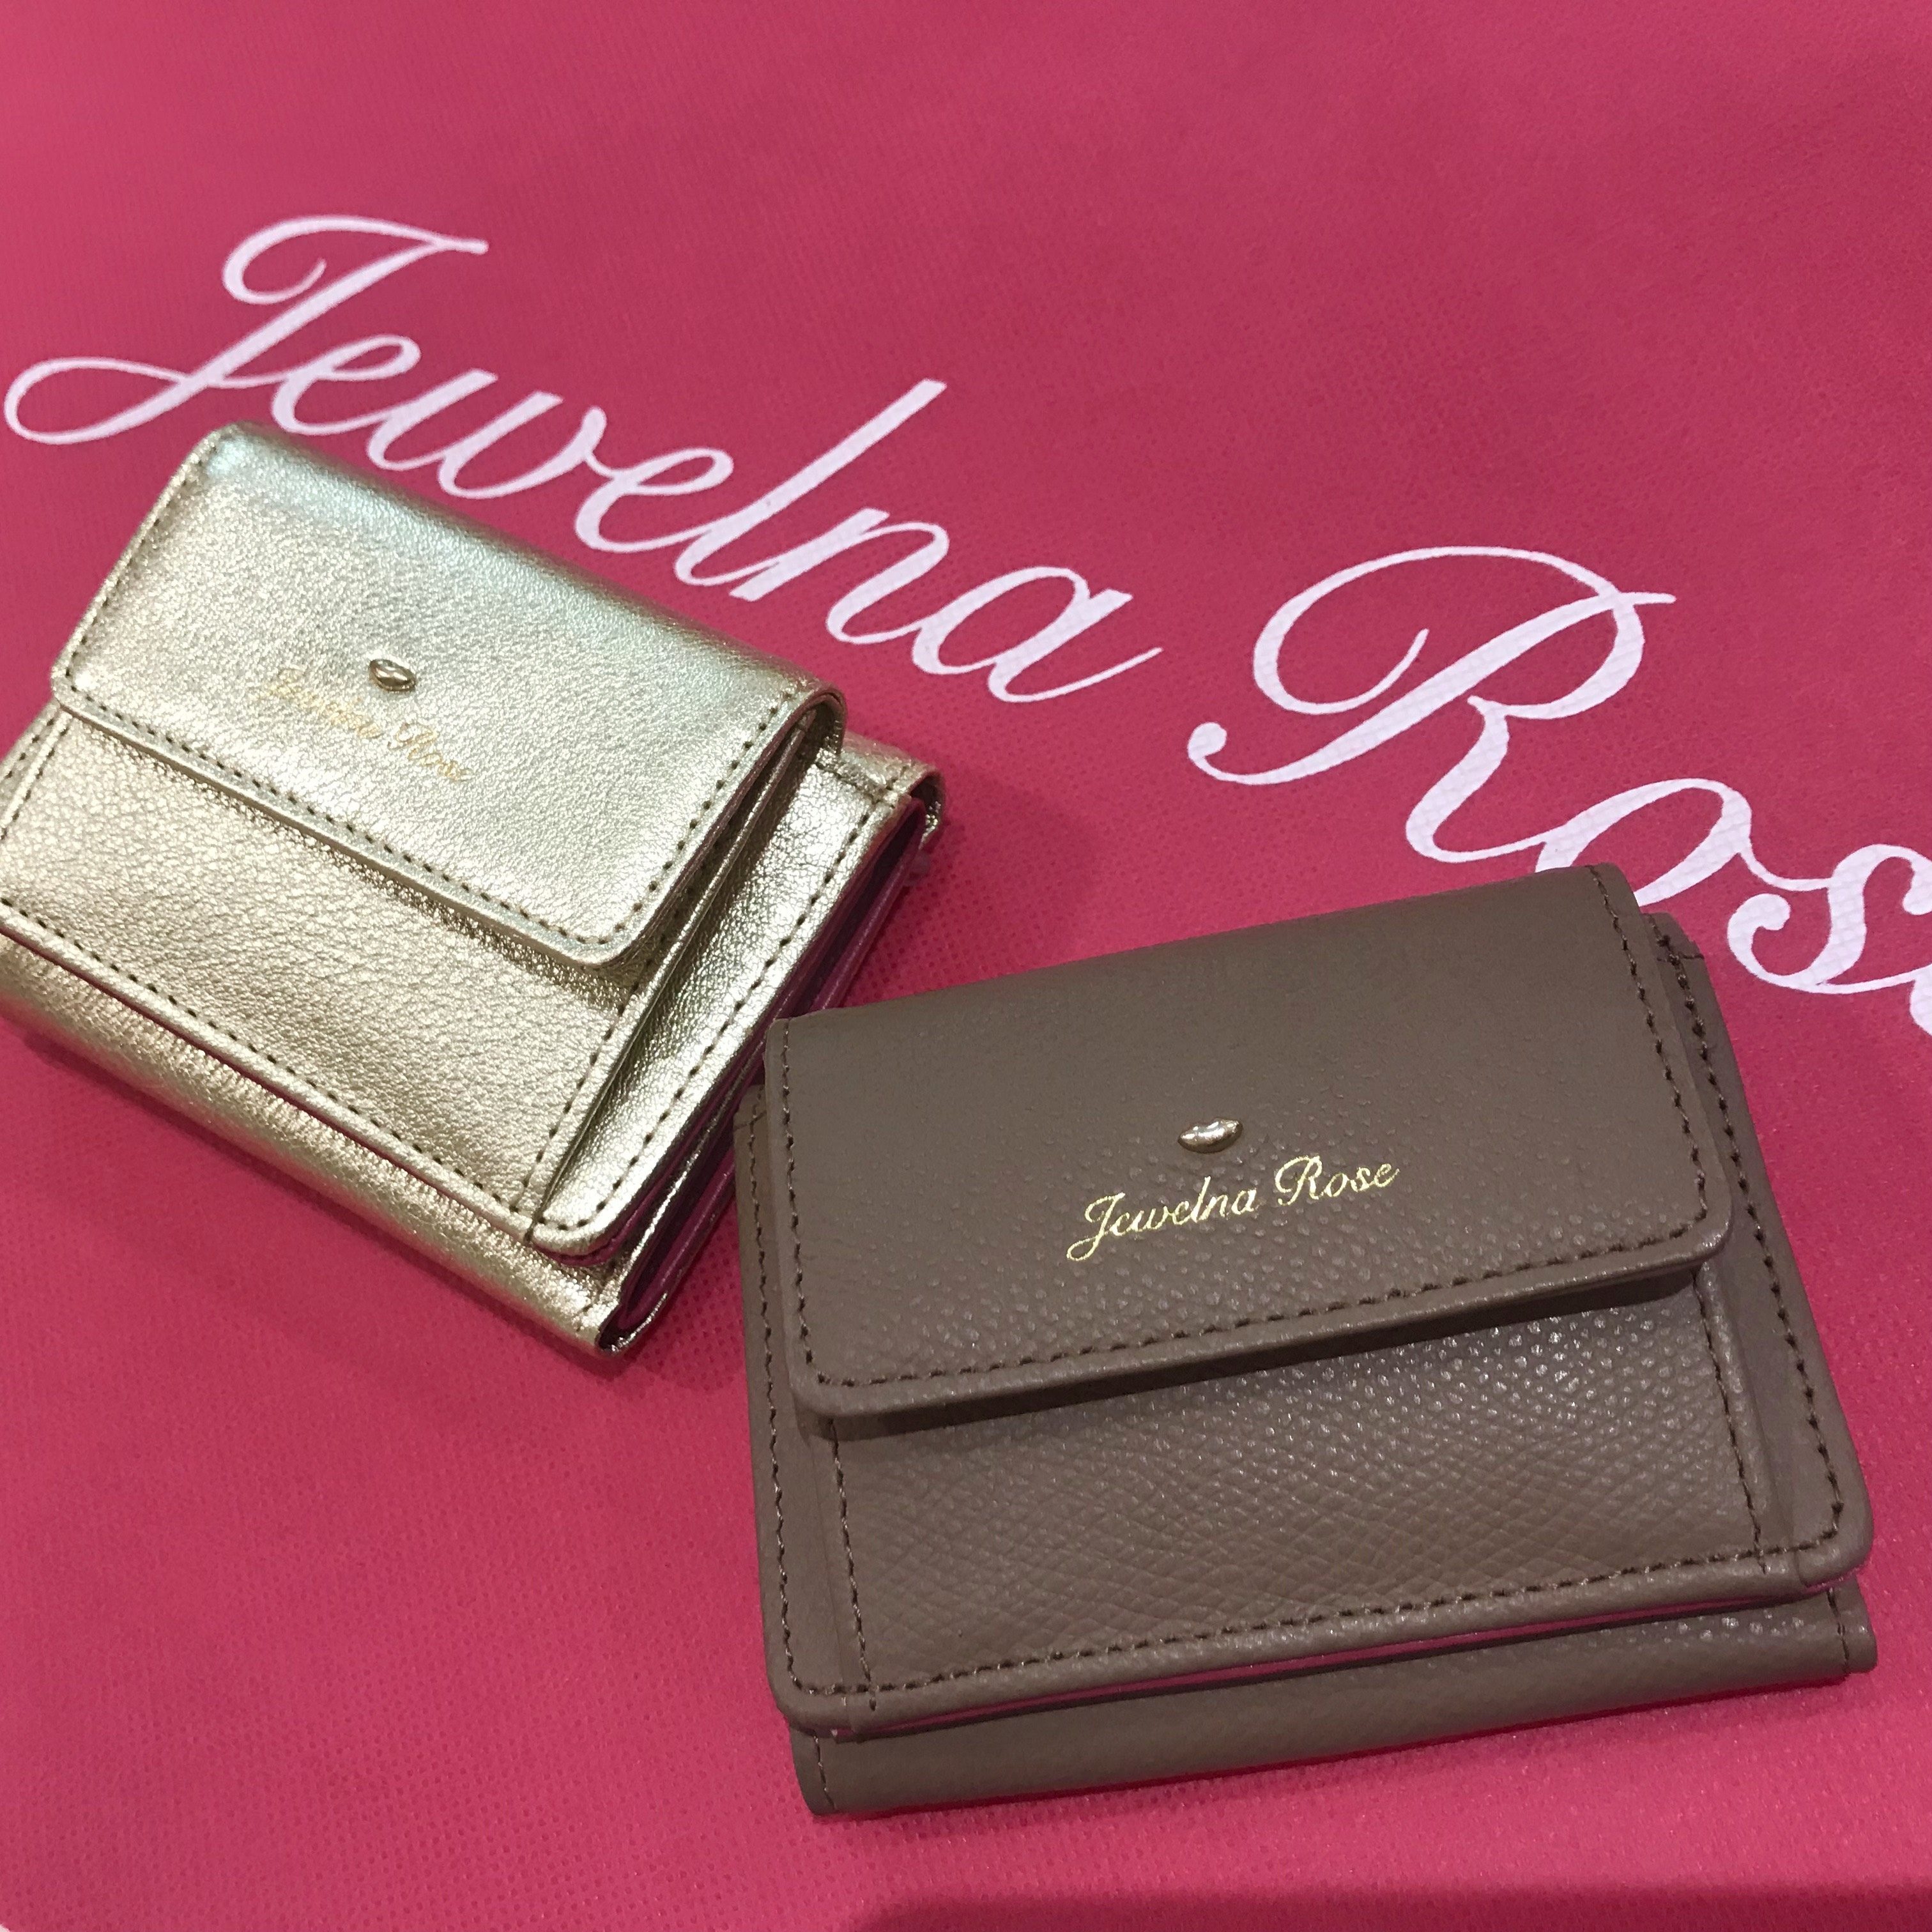 サイズ感が可愛いミニ財布 Jewelna Rose ジュエルナローズ公式サイト